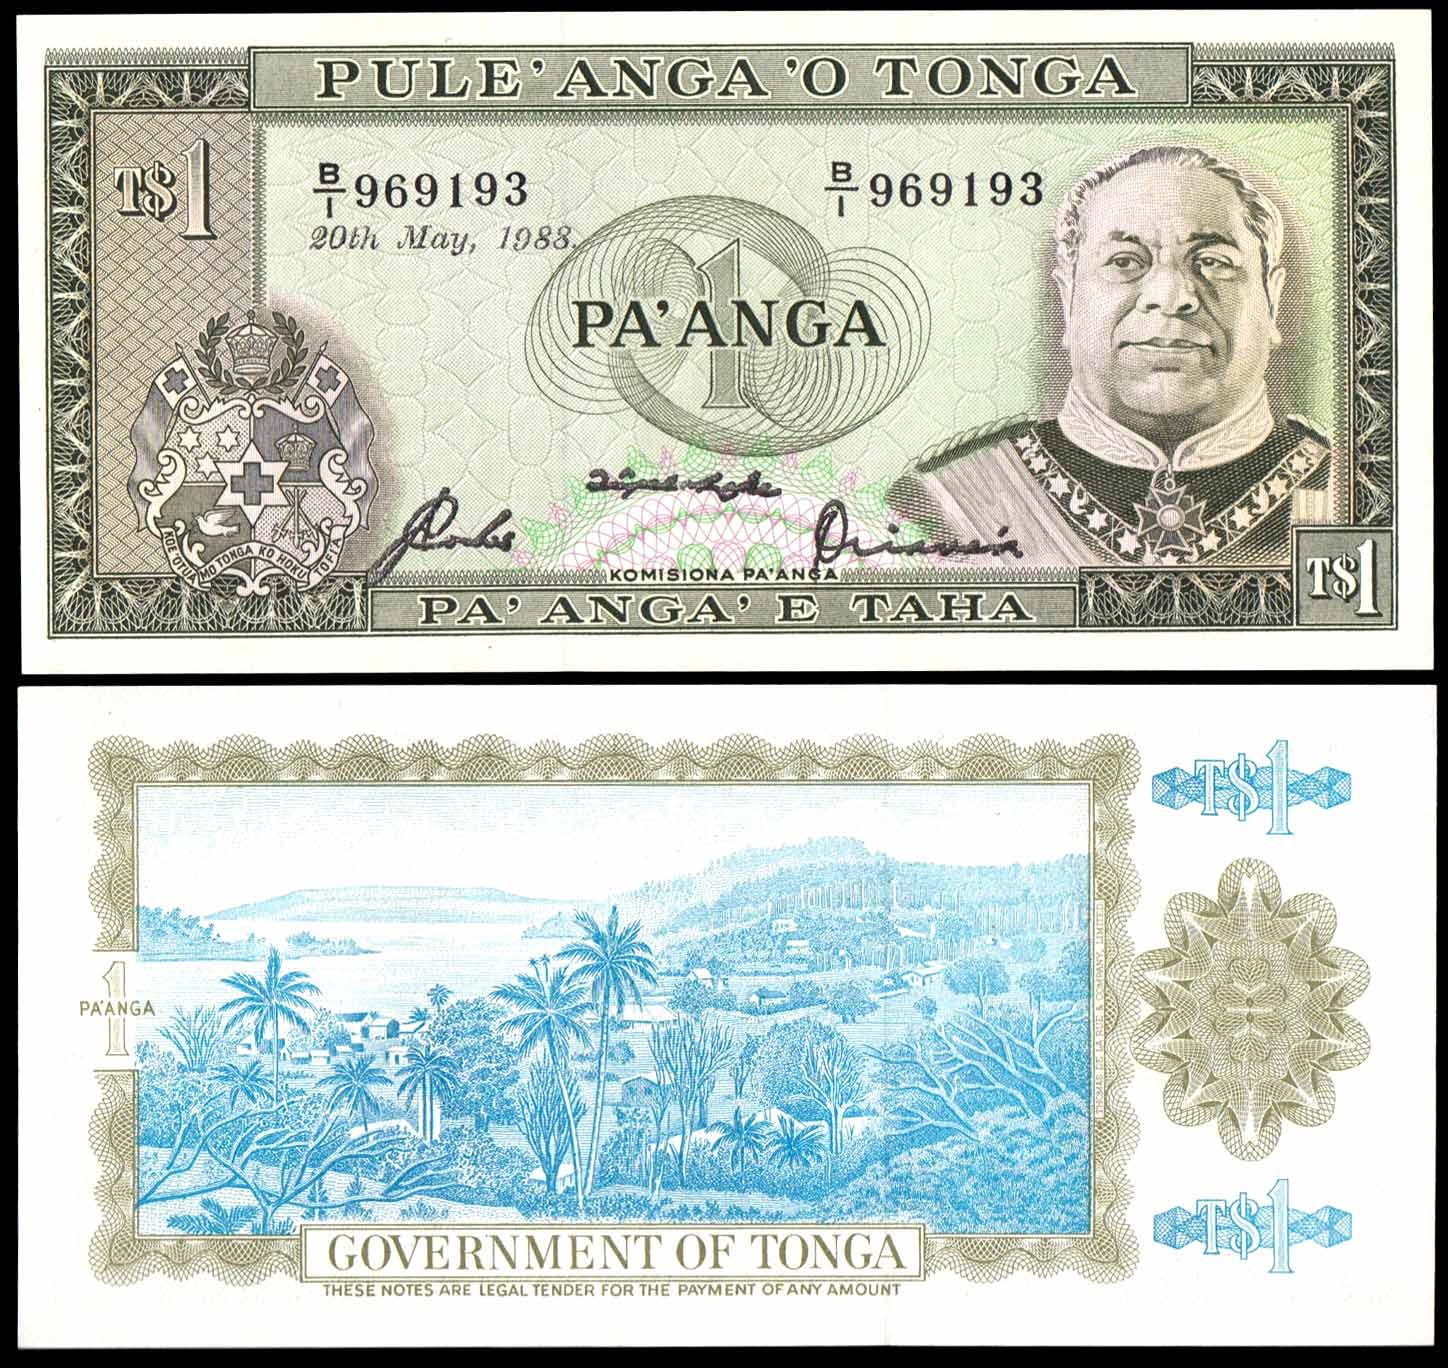 TONGA 1 Pa'anga "King Tupou IV 1988 Quasi Fior di Stampa